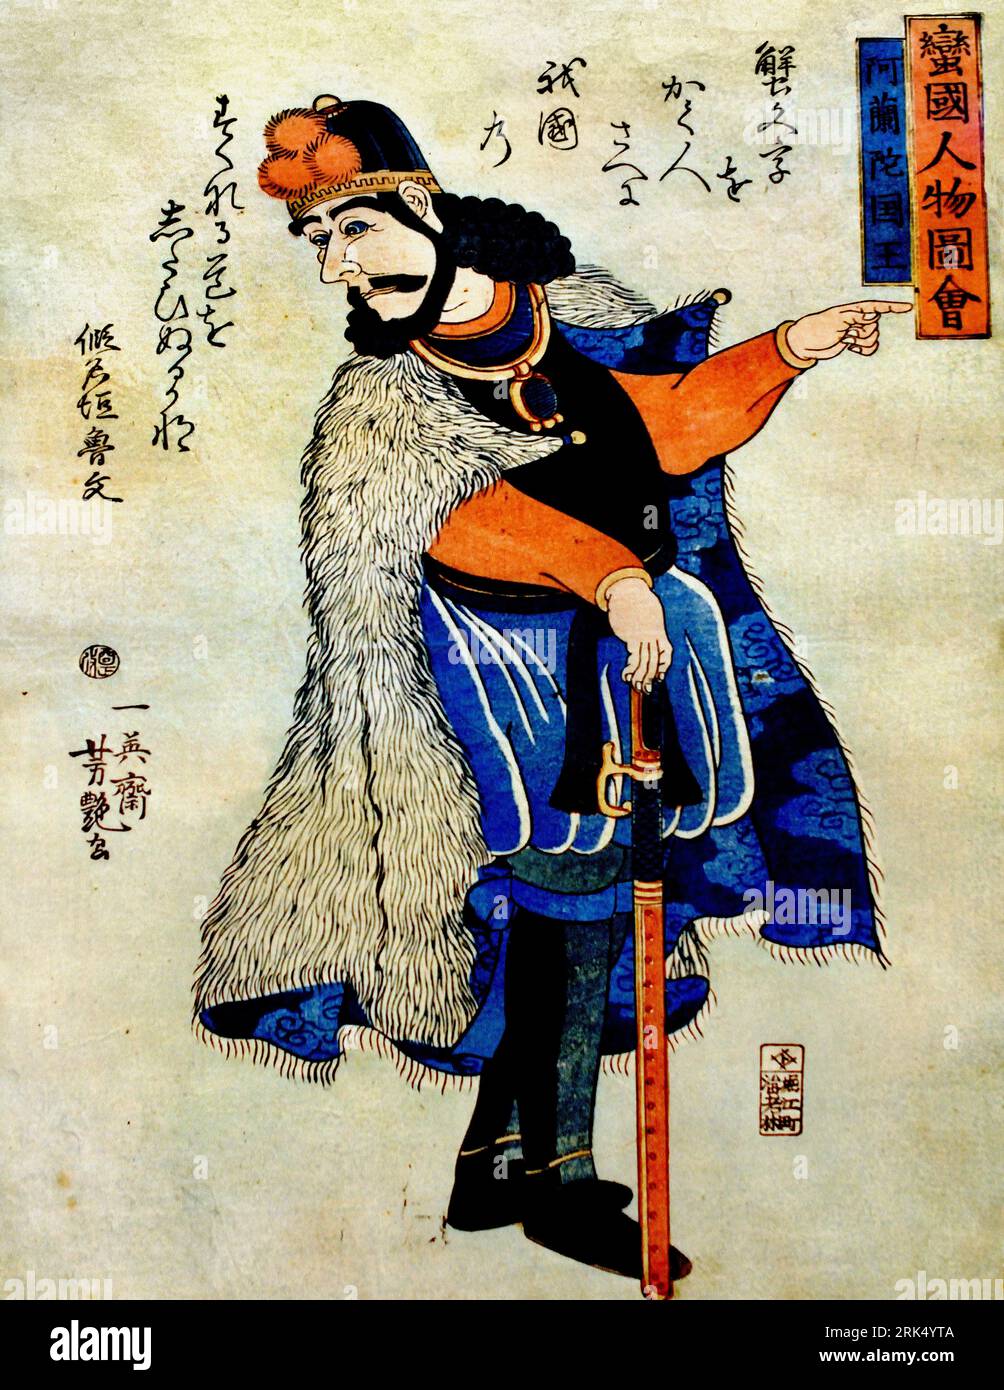 Le roi de Hollande, 1861, par, Utagawa Yoshitsuya, Japon, japonais, homme en pied (Néerlandais), représenté comme un samouraï japonais, sa main droite se penche sur une épée, celle de gauche pointe vers la droite, tête avec barbe, cheveux bouclés de longueur moyenne, un couvre-chef regarde vers la gauche, Un manteau de fourrure sur ses épaules, portrait fantastique caricaturé, roi William III, artiste Utagawa Yoshitsuya, Bankoku jimbutsu zue , Banque D'Images